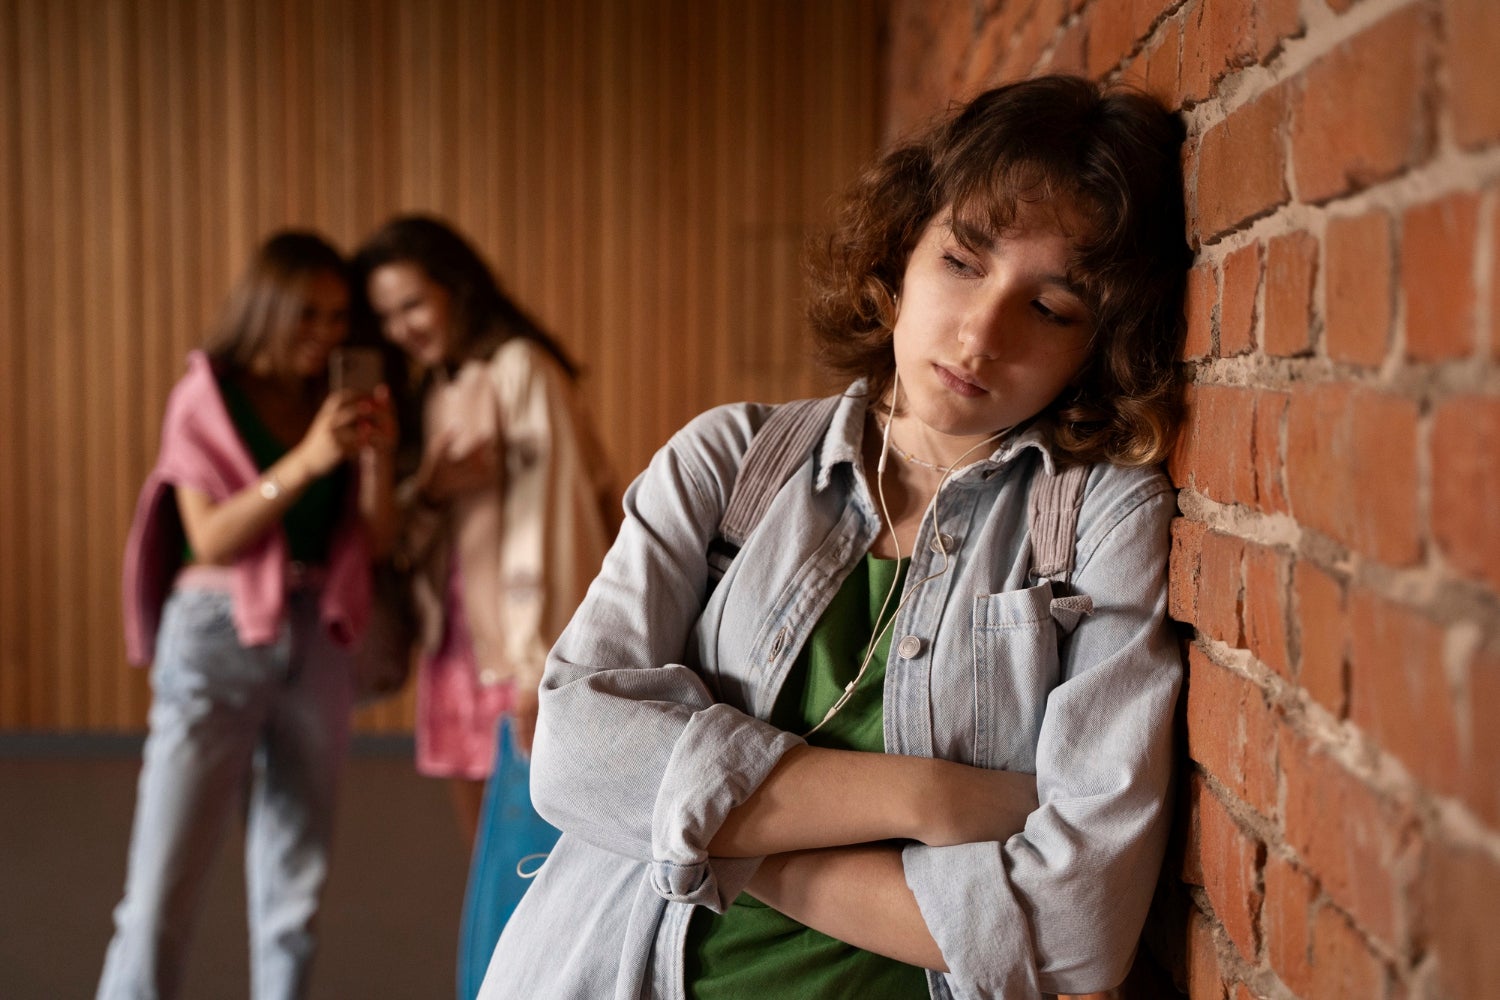 Día Mundial contra el Bullying: "La lucha contra el acoso escolar avanza, pero aparecen nuevos riesgos"